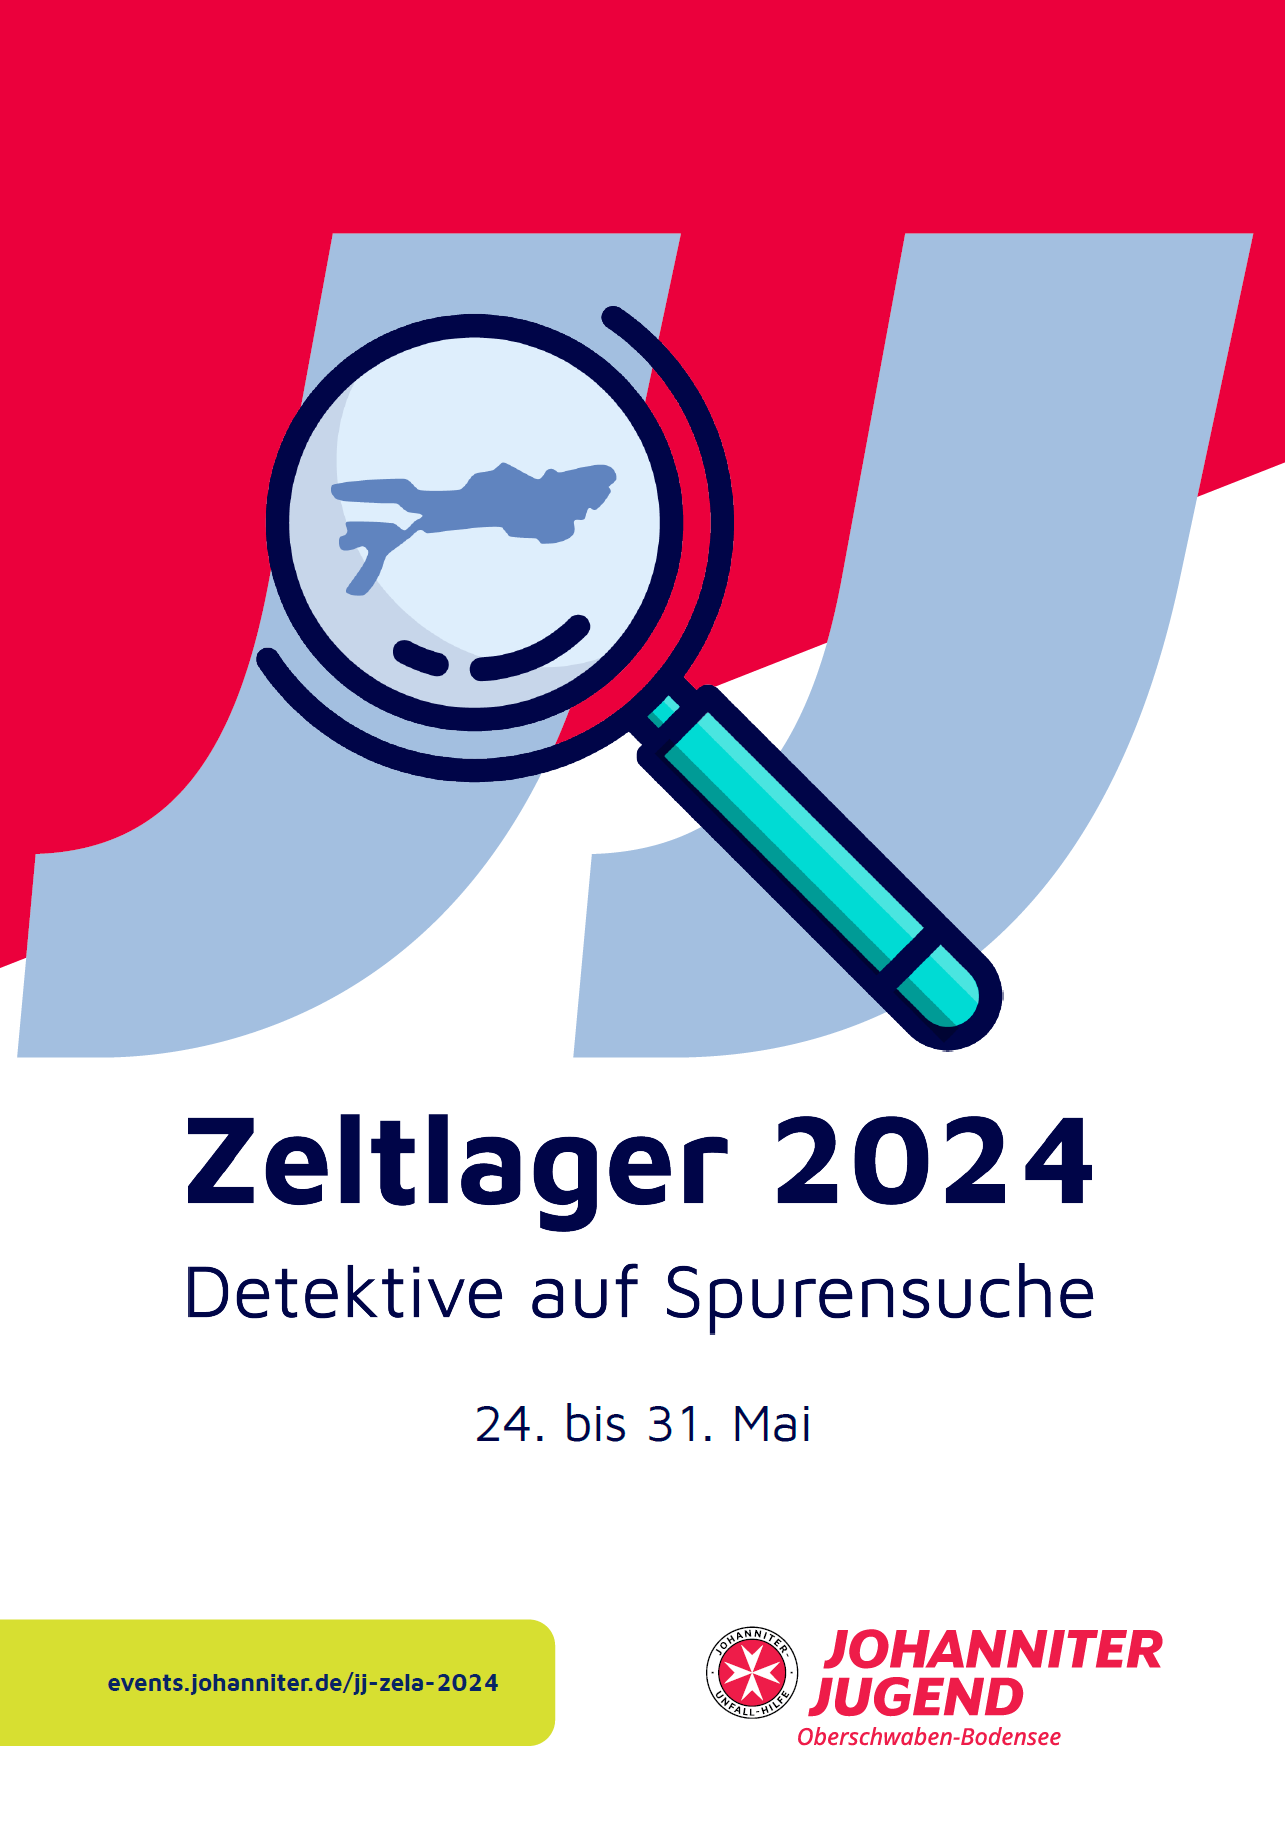 Johanniter Jugend: Zeltlager 2024